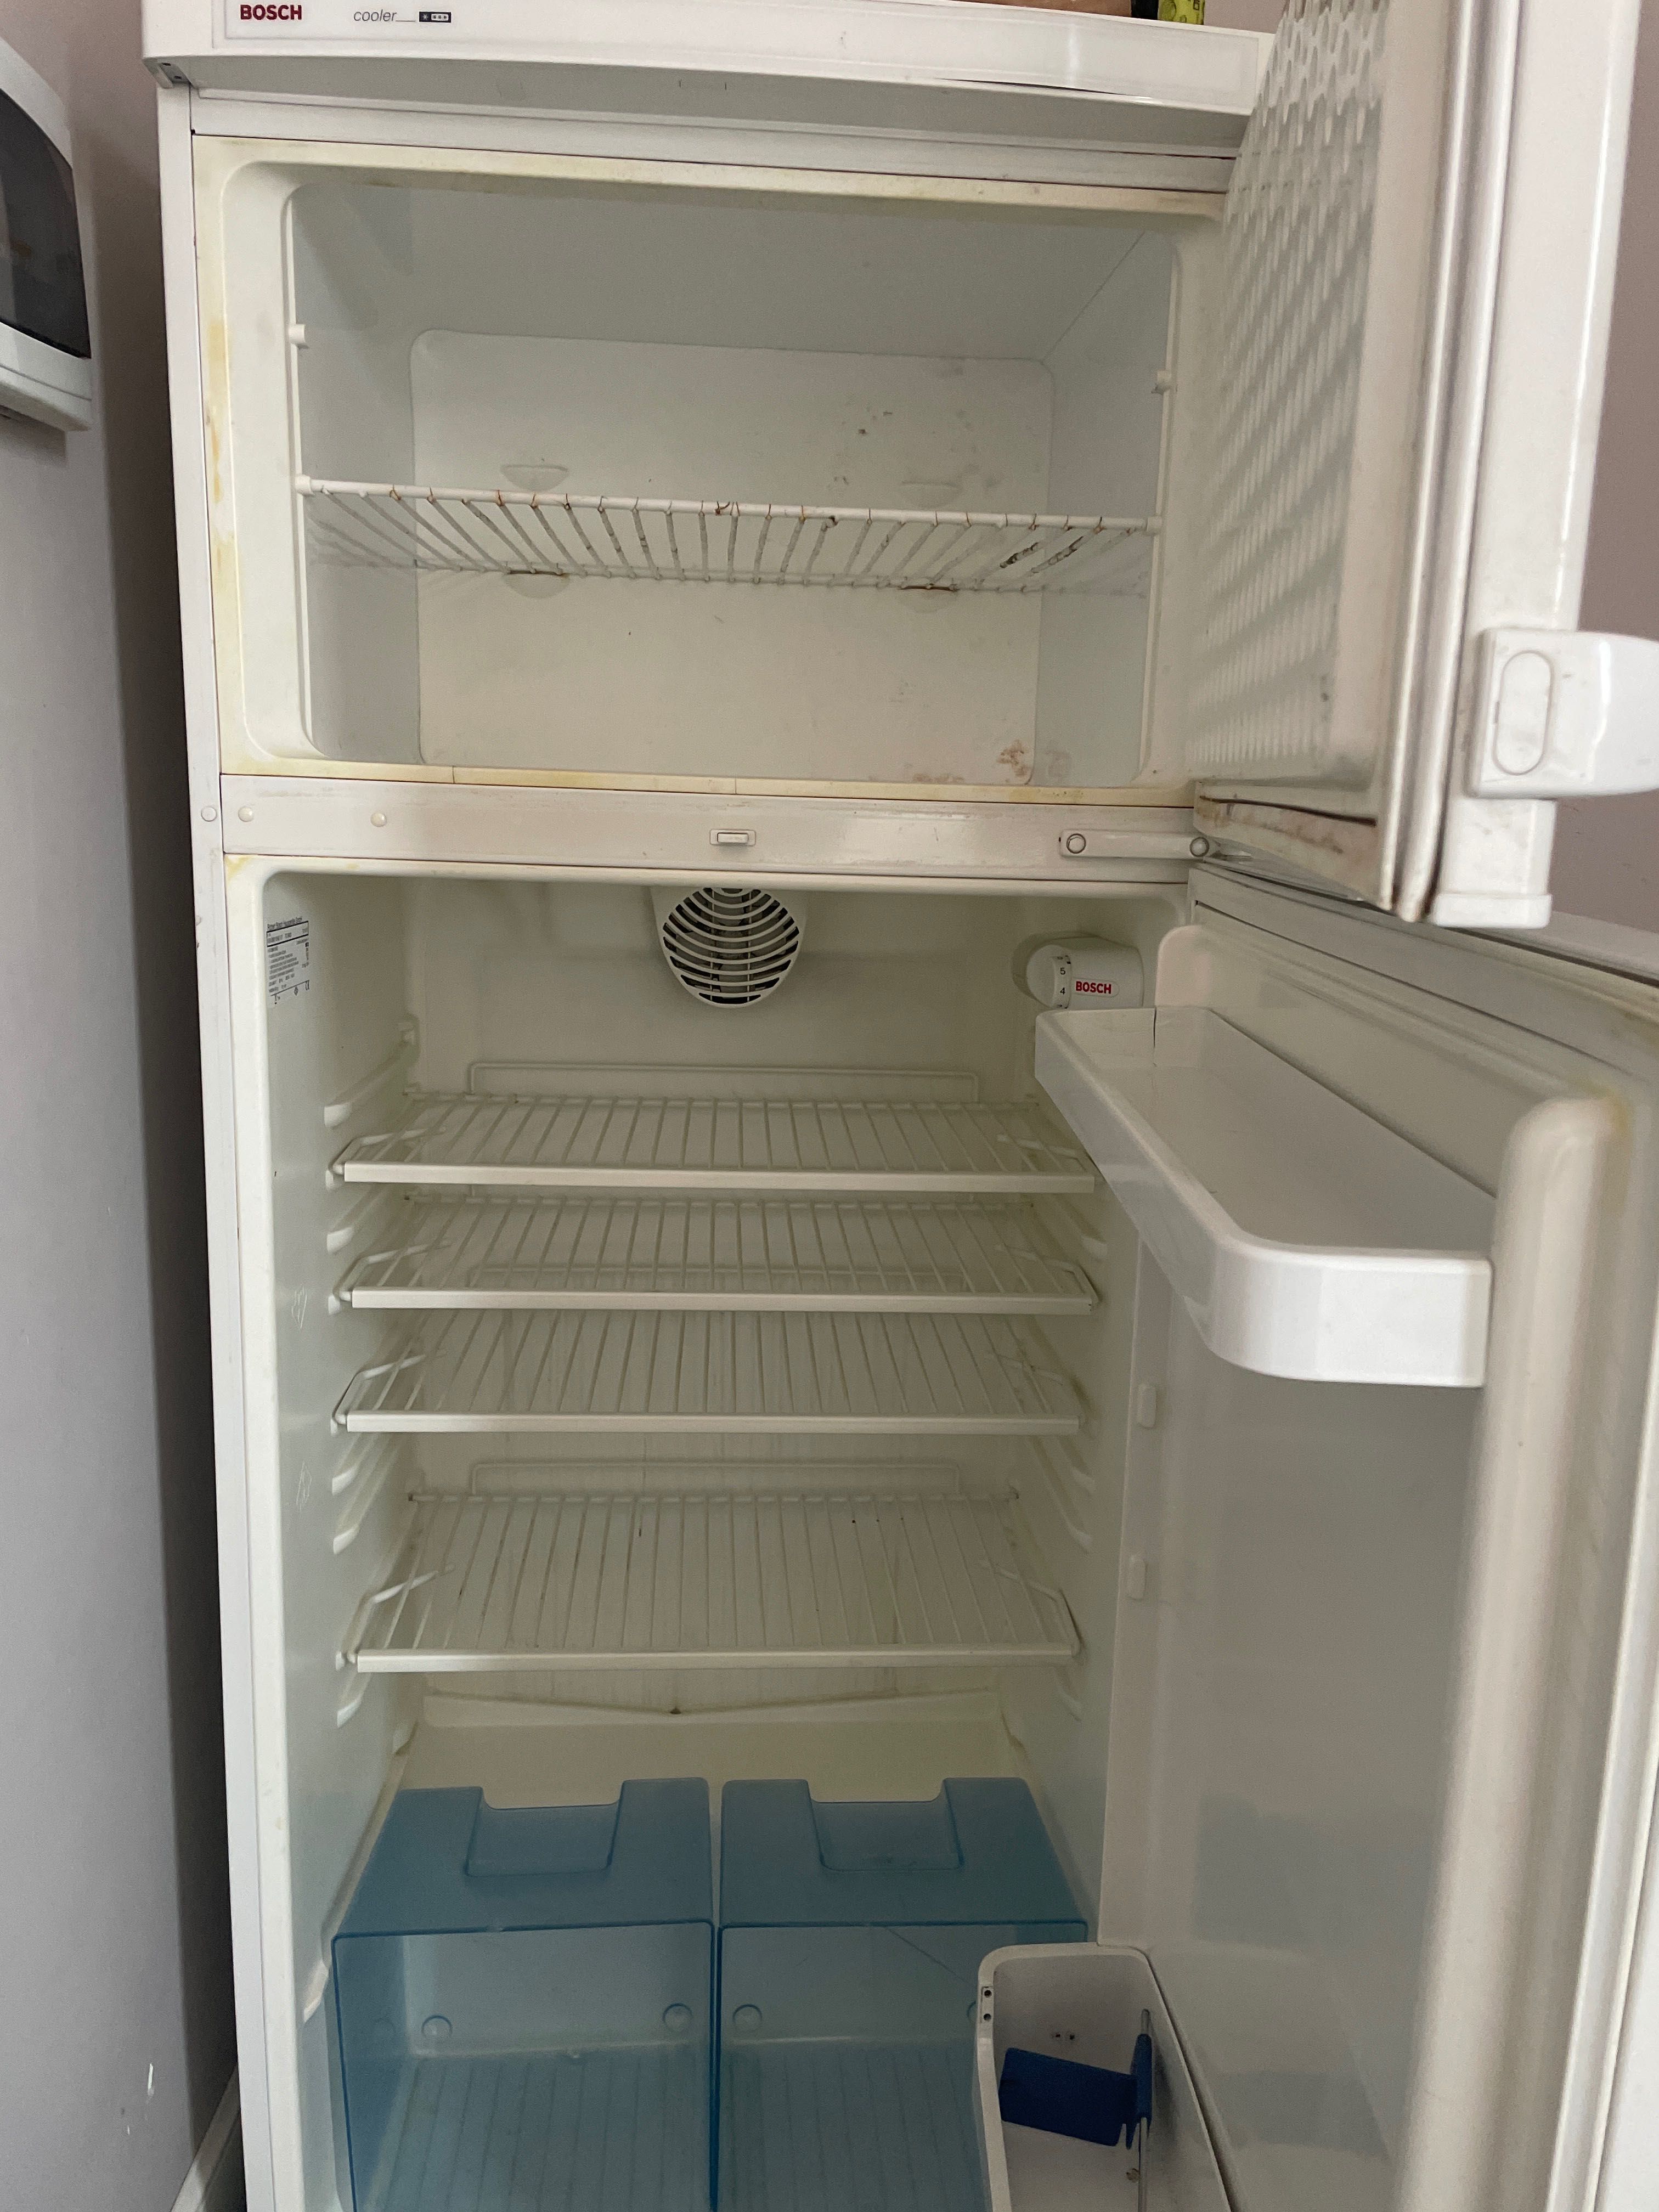 BOSH холодильник с металлическими полками. Вместительный